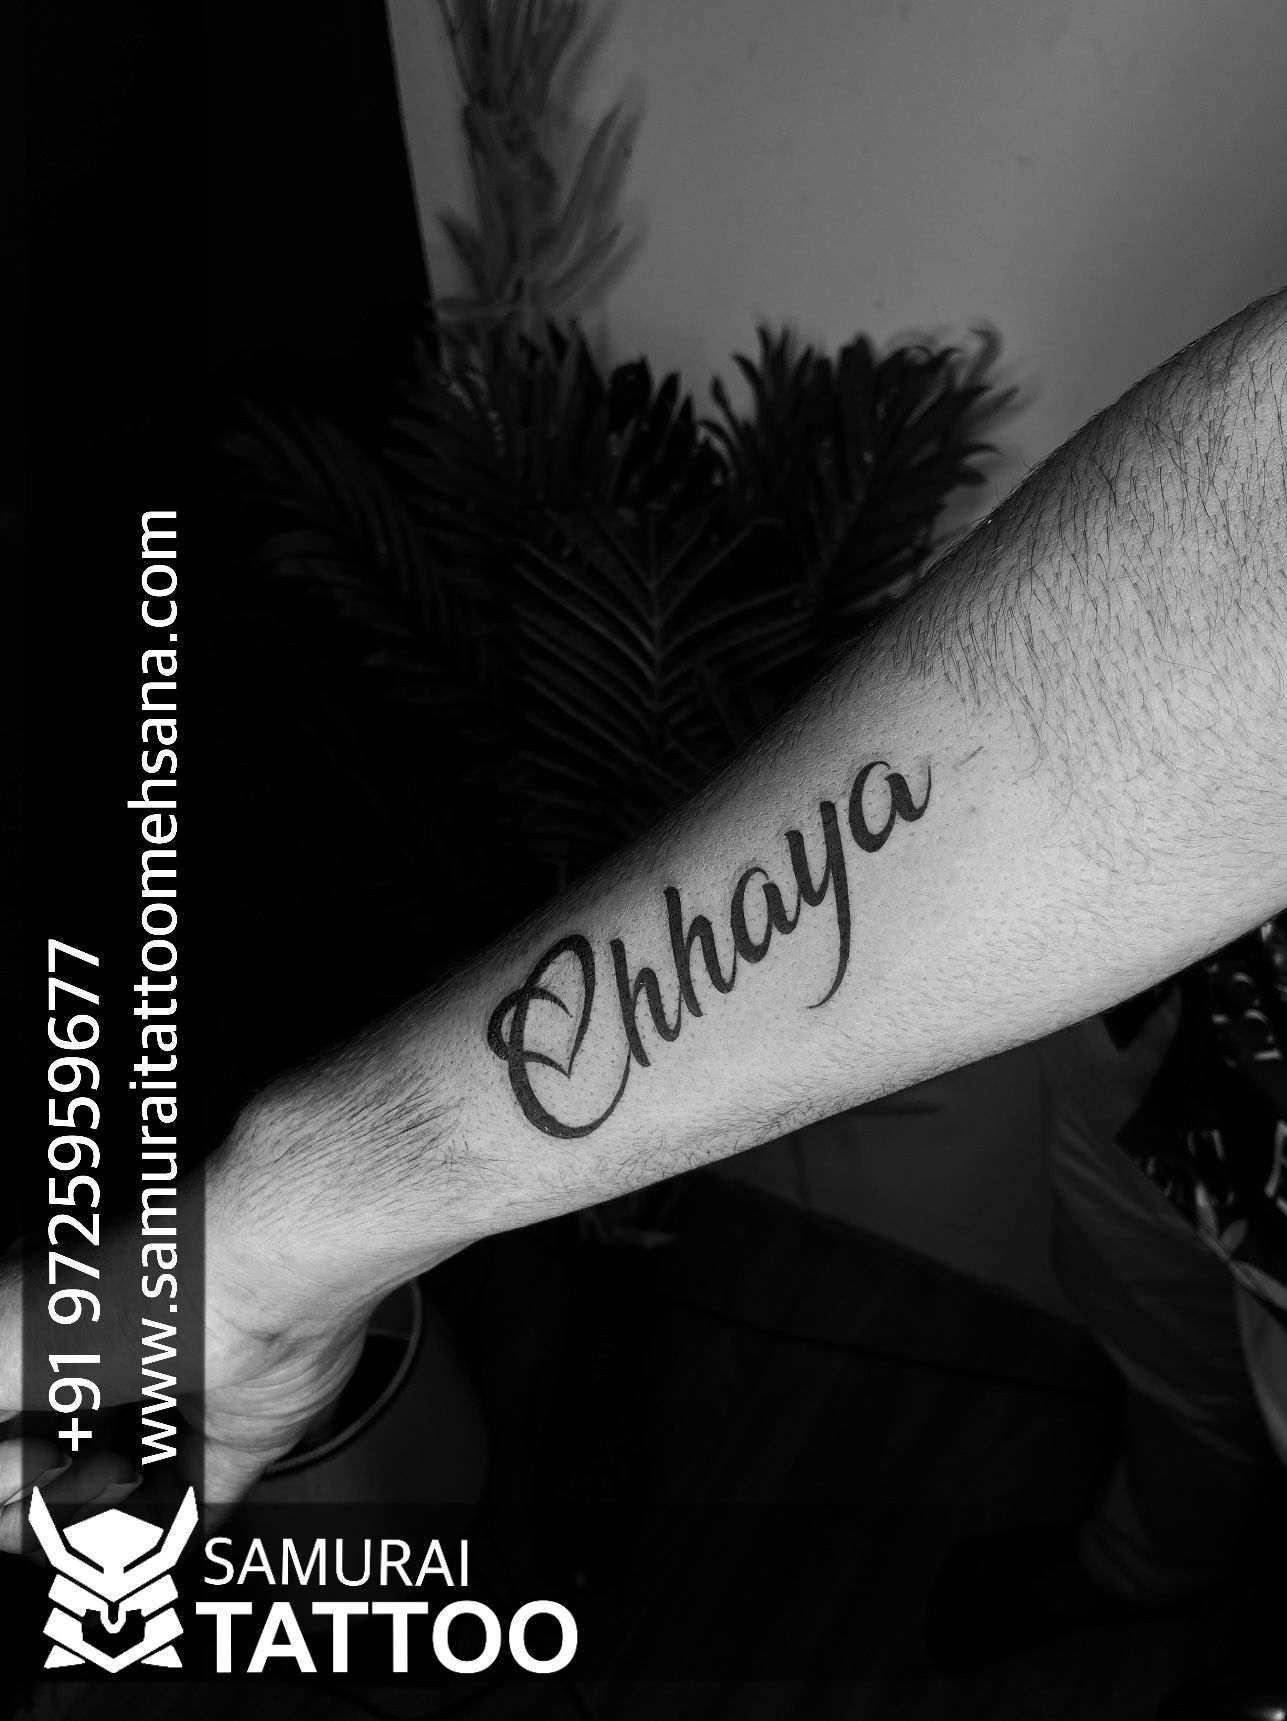 Manoj name tattoo manoj name tattoo with design samurai tattoo mehsana   Name tattoo designs Name tattoo on hand Name tattoo